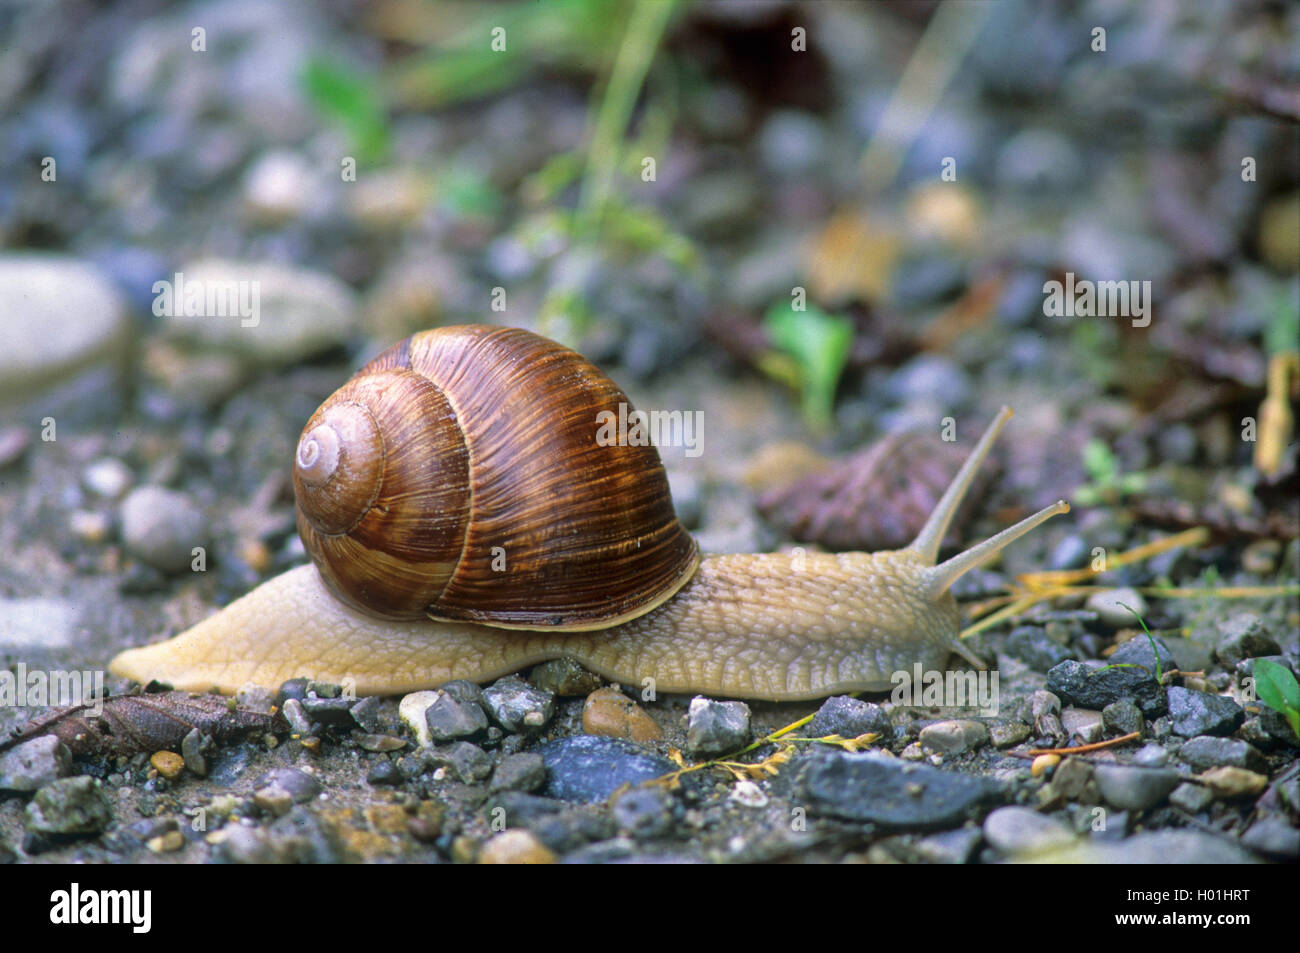 Roman snail, escargot, escargot snail, edible snail, apple snail, grapevine snail, vineyard snail, vine snail (Helix pomatia), creeping snail, Germany, Baden-Wuerttemberg Stock Photo